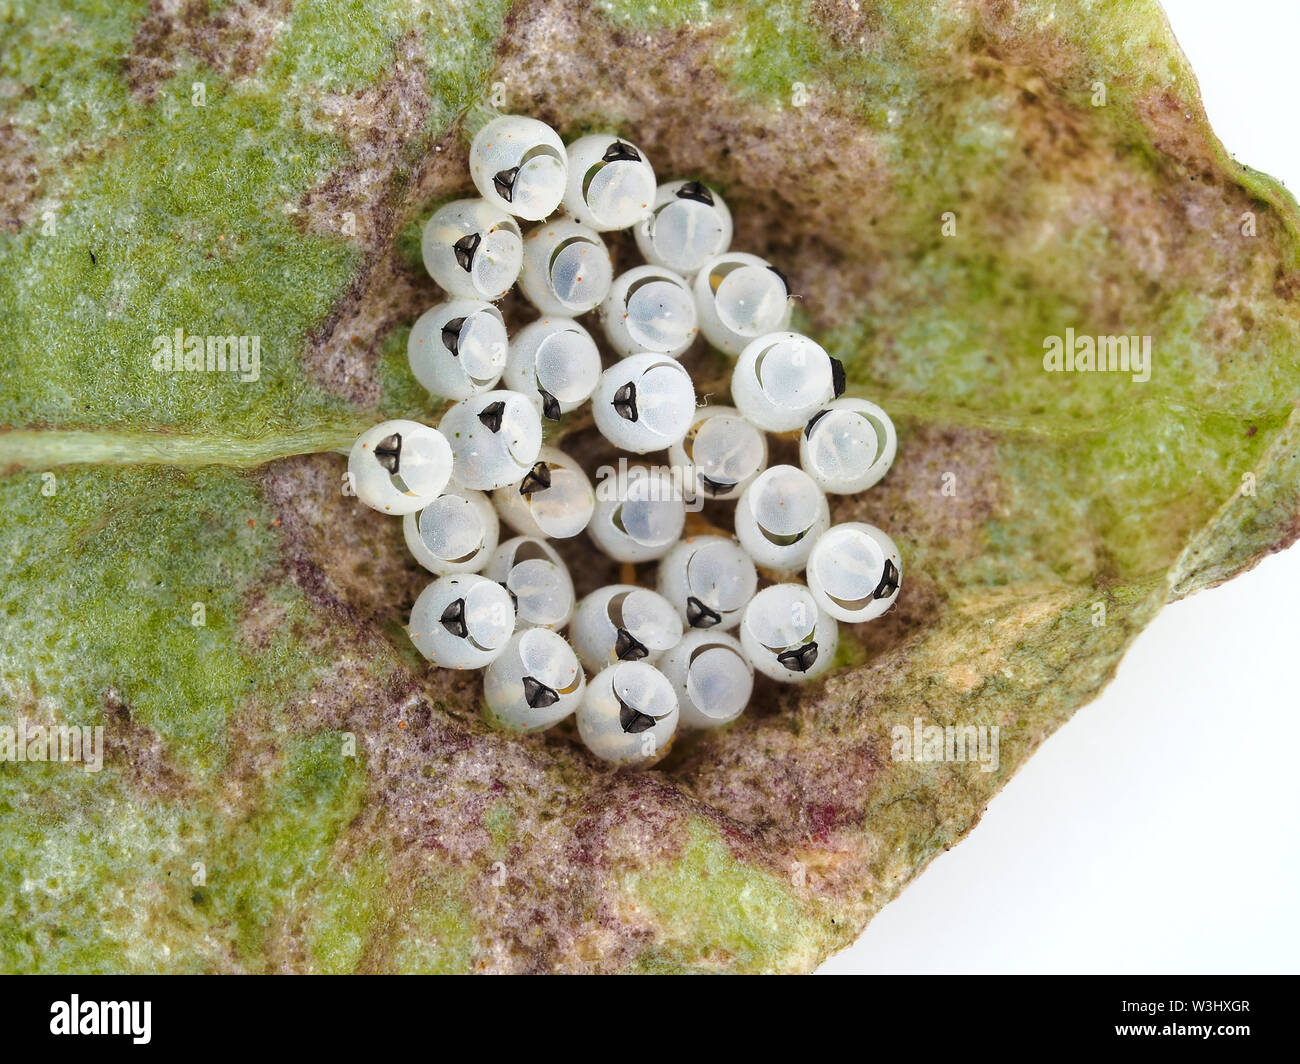 Geschlüpfte Eier von braunem marmorierten Stinkwanze (Halyomorpha halys) auf einem Rübenblatt - Makrofotografie Stockfoto